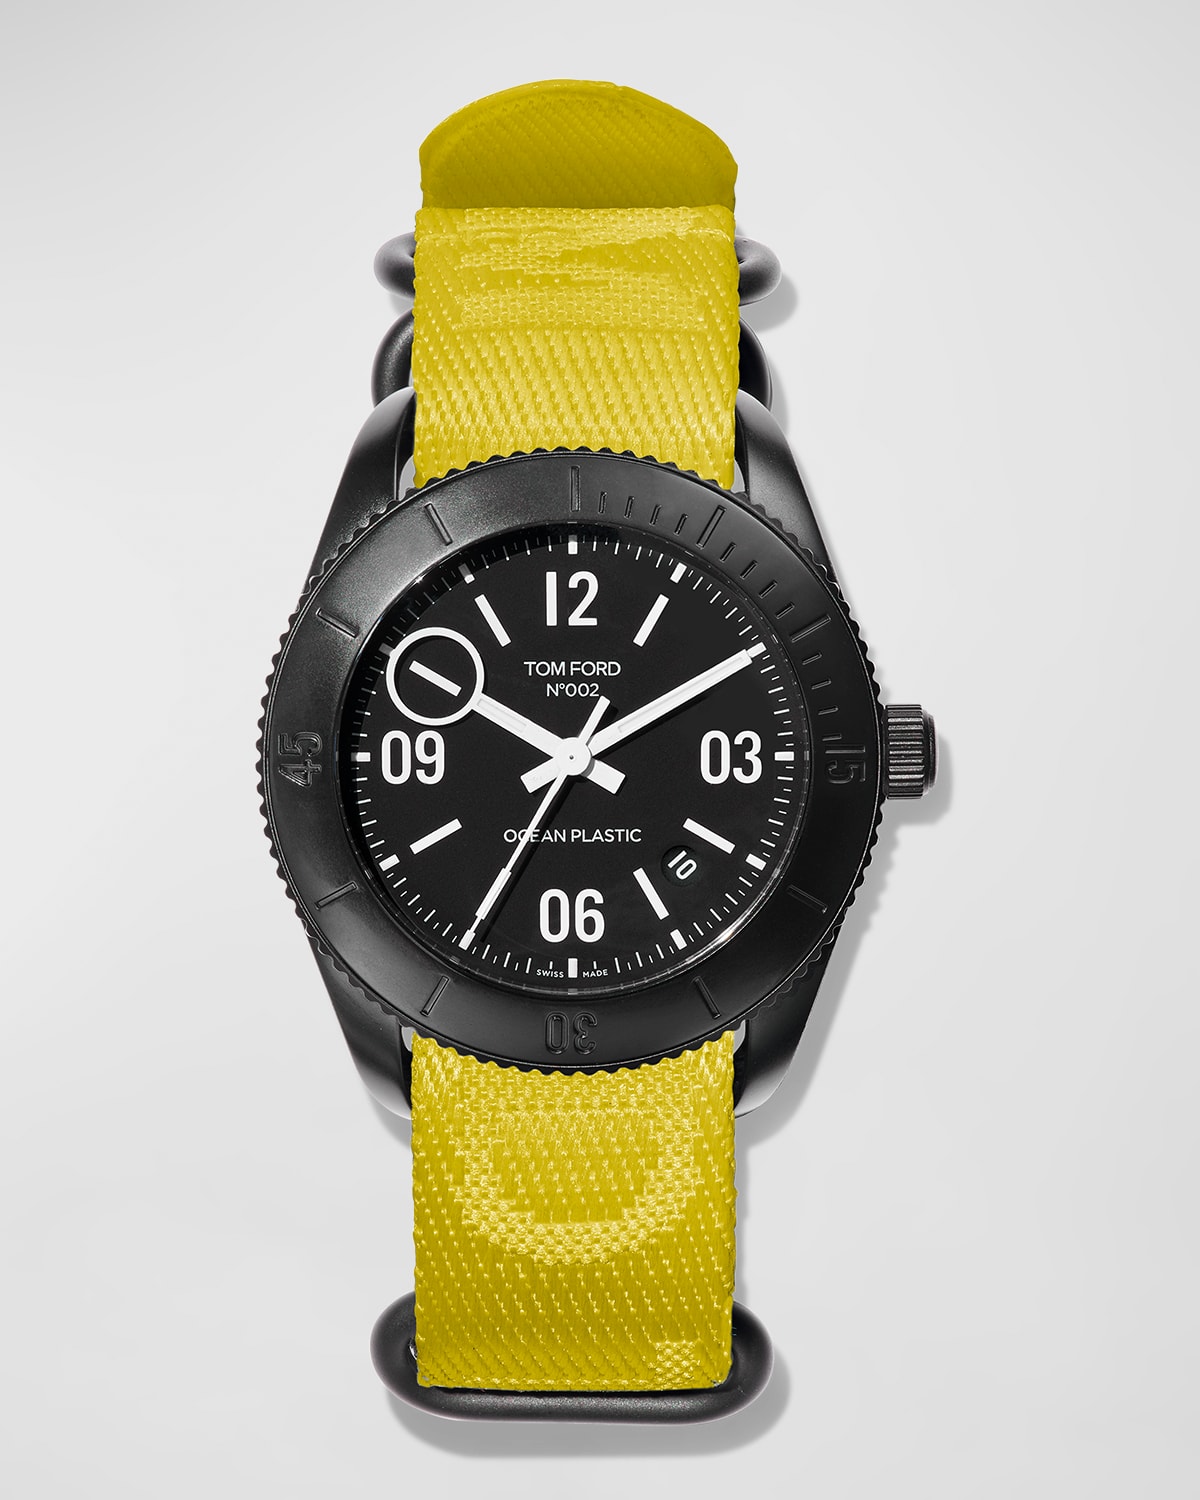 Men's 002 Ocean Plastic Sport Watch, 43mm